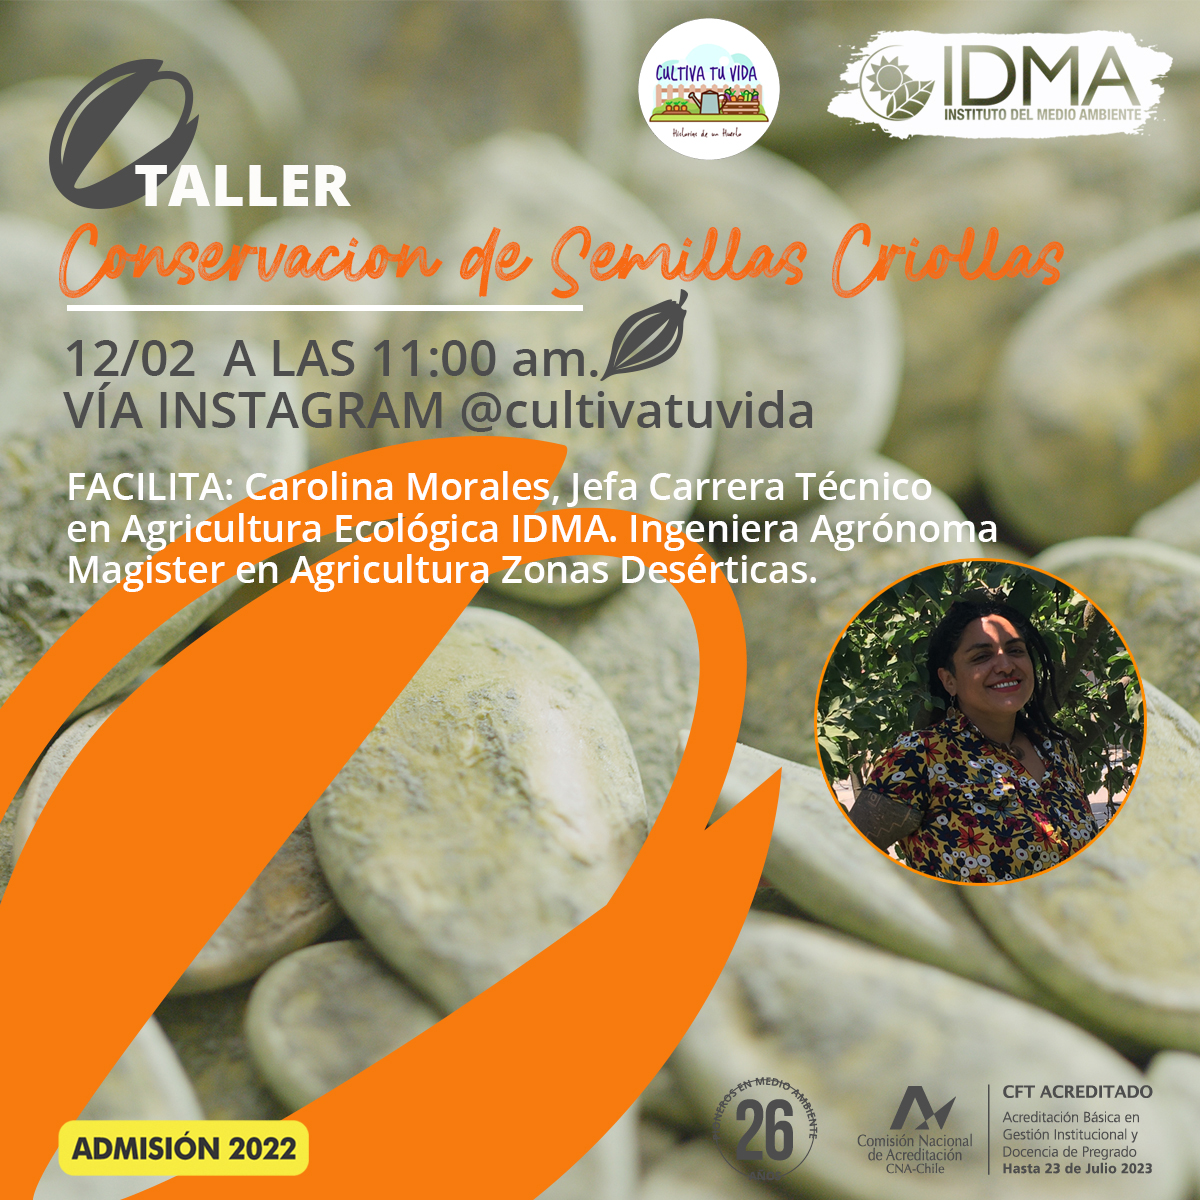 Taller Agricultura: Conservación de Semillas Criollas